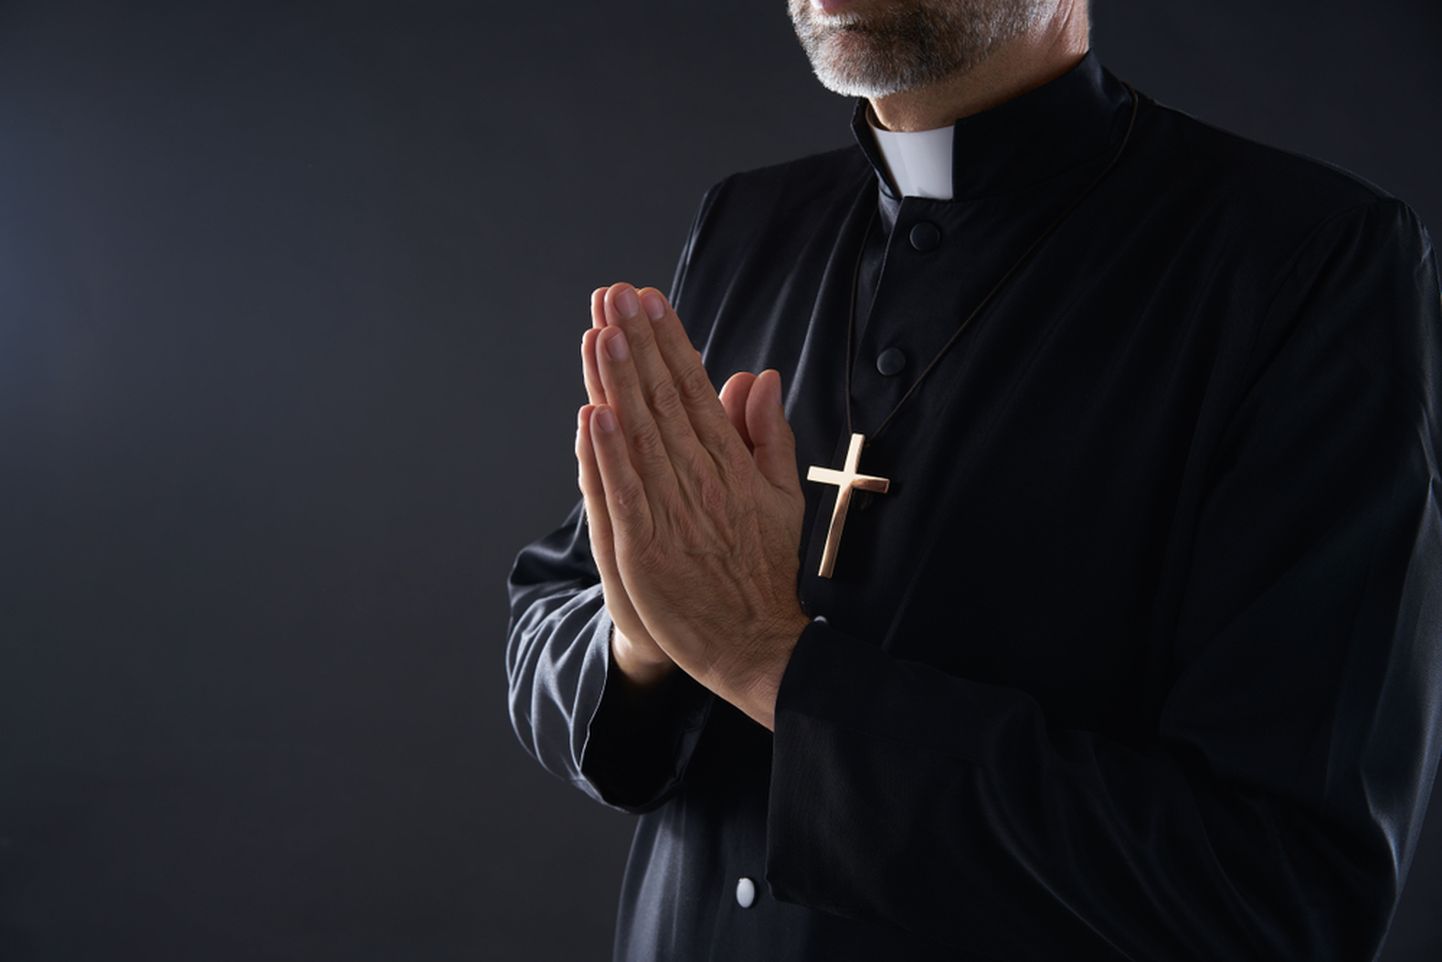 Католический священник. Иллюстративное фото.